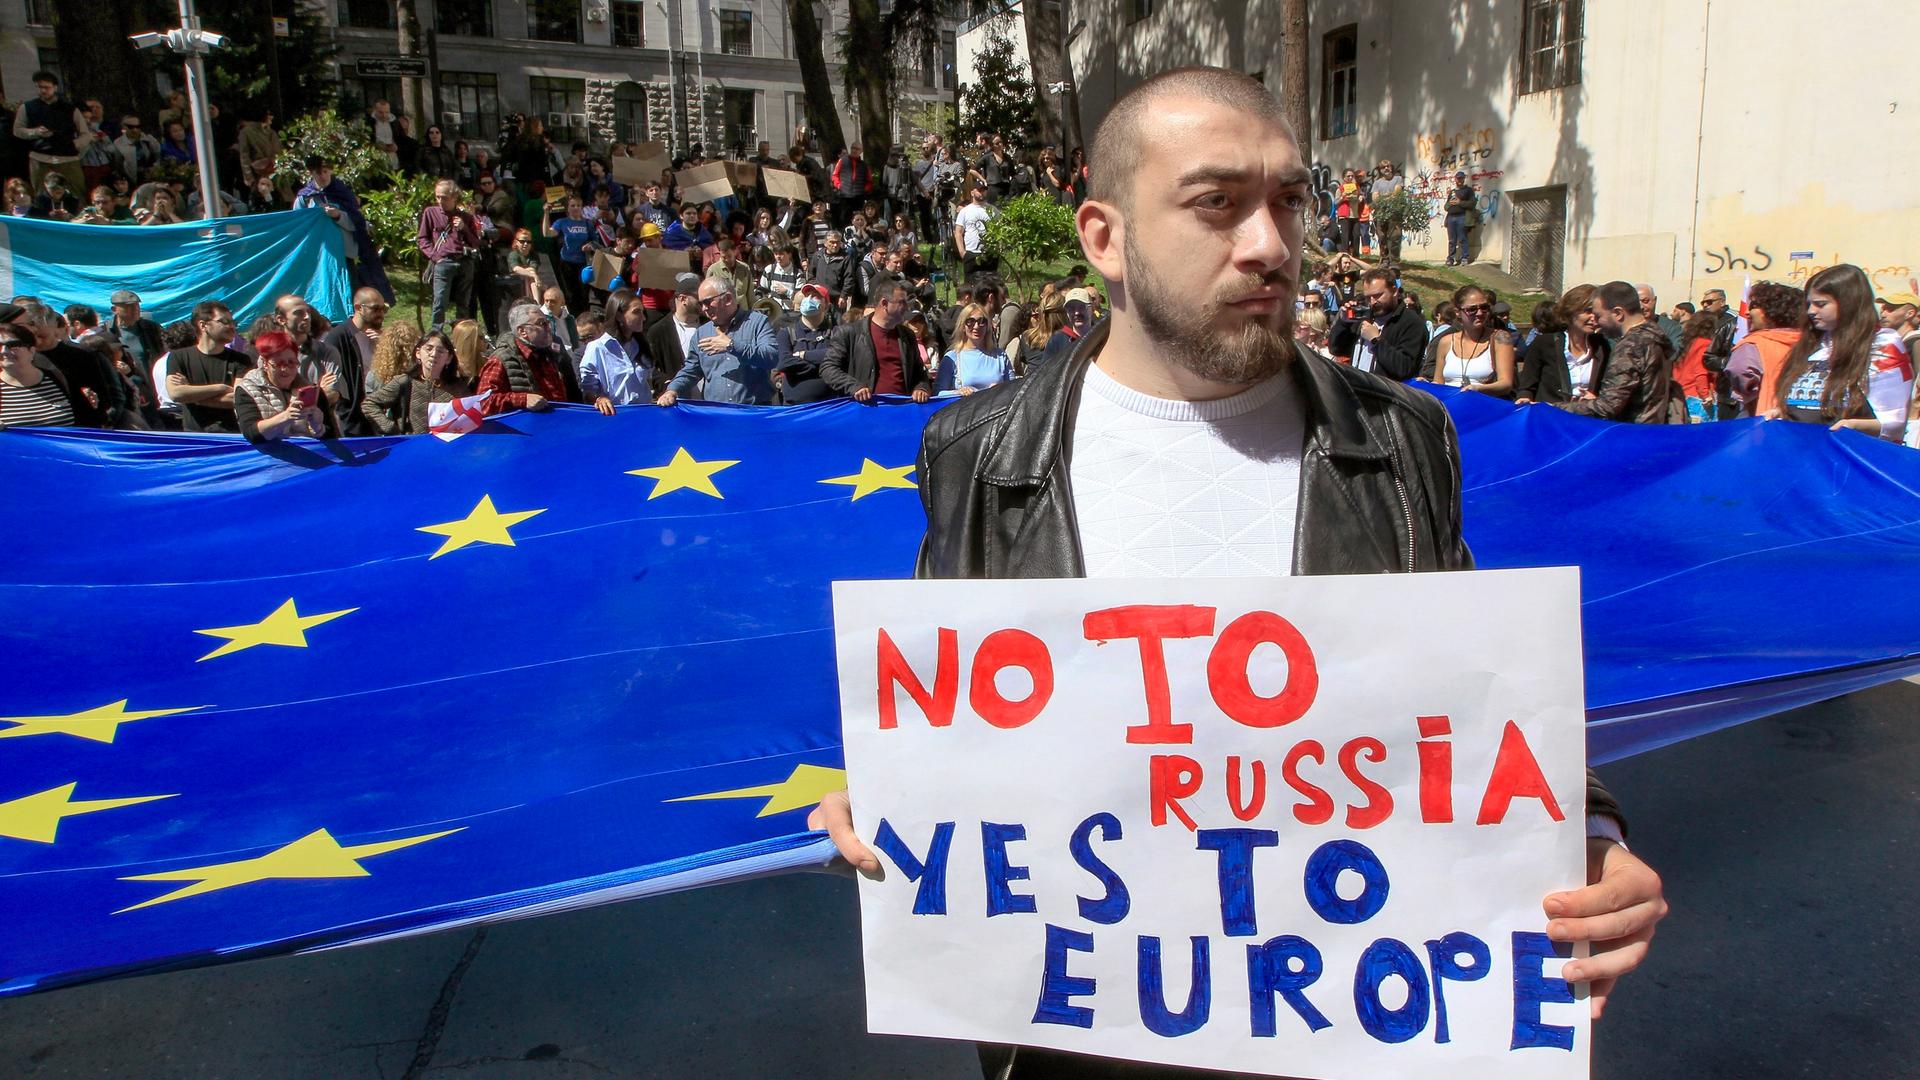 Ein Mann steht vor Demonstranten mit einer riesigen EU-Flagge. Er hält ein Pappschild mit der Aufschrift "No to Russia, yes to Europe".